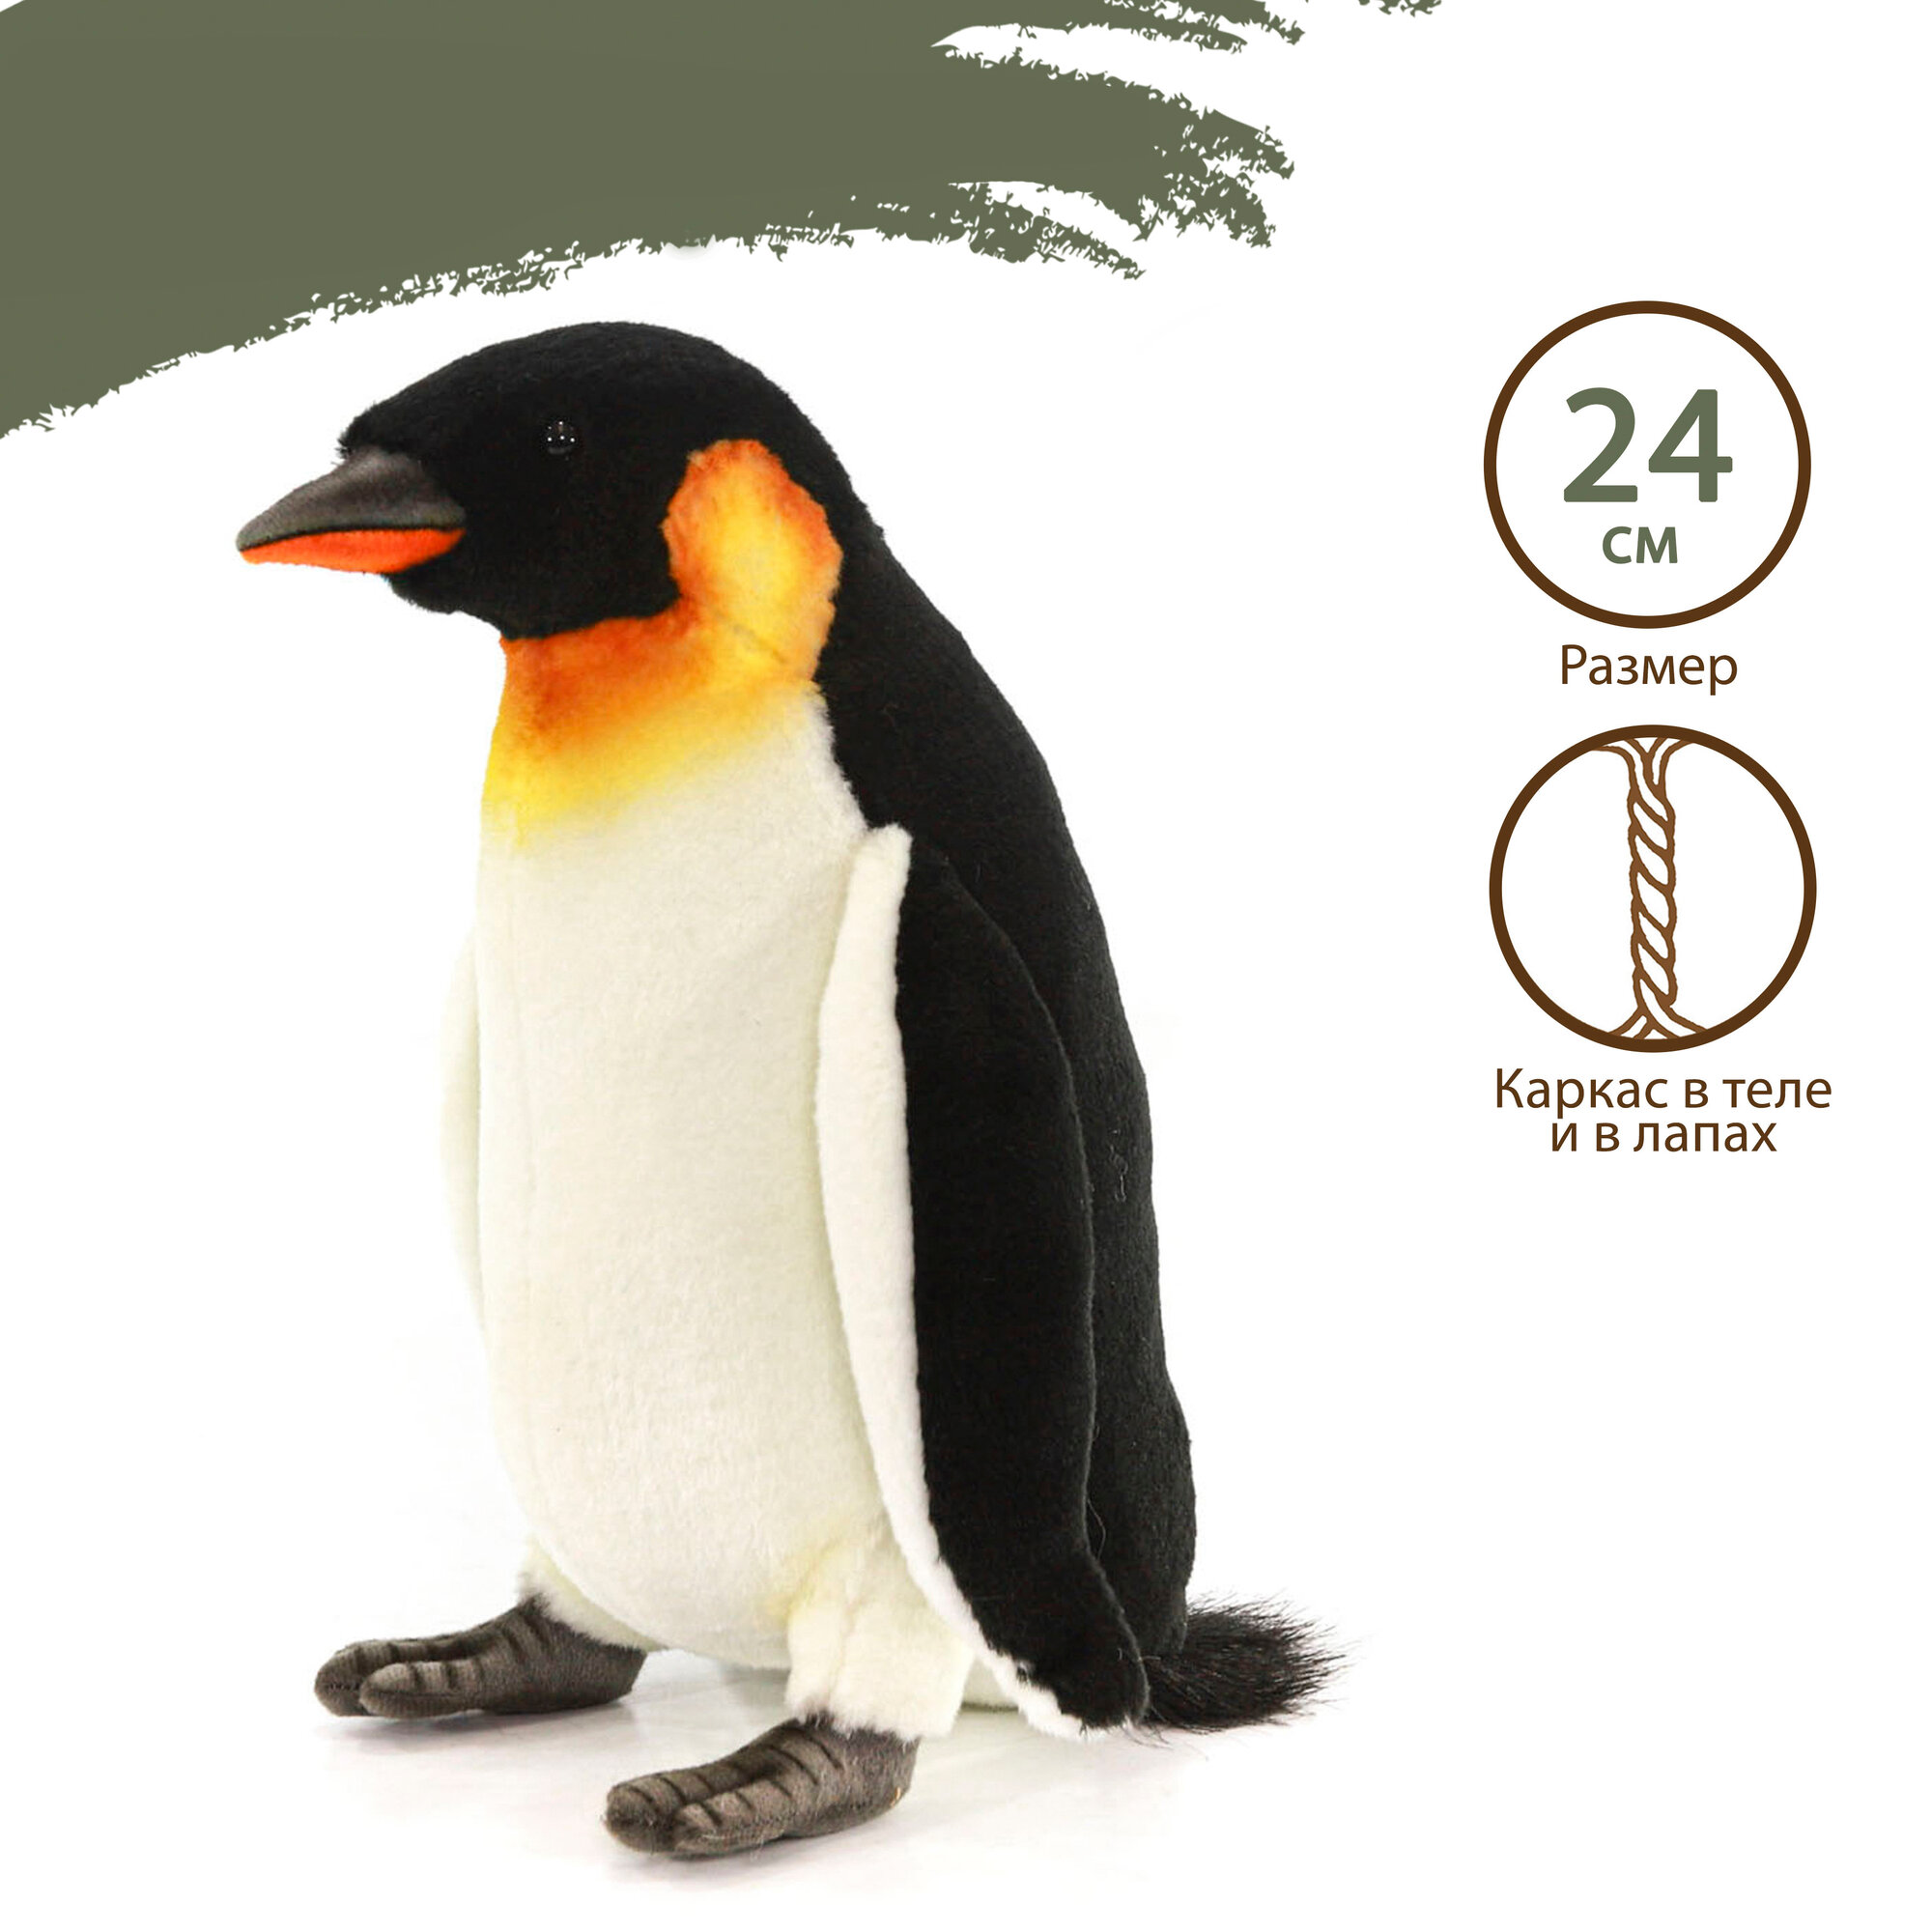 Hansa Creation "Императорский пингвин, 24 см - 3159" - мягкая игрушка - фото №2